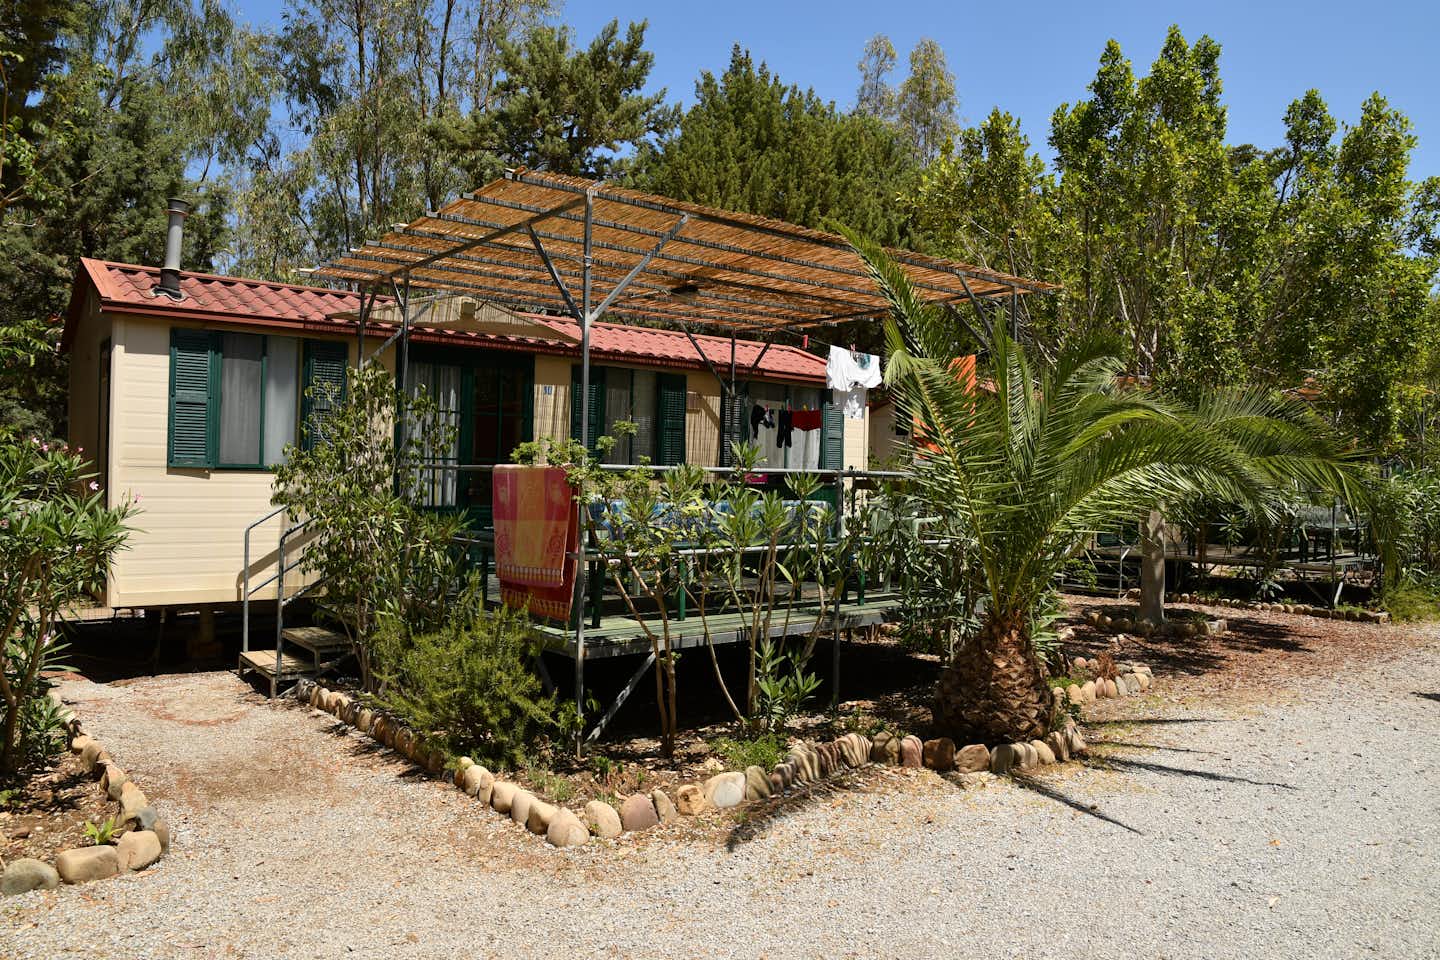 Camping Costa Ponente - Mobilheim mit überdachter Veranda auf dem Campingplatz